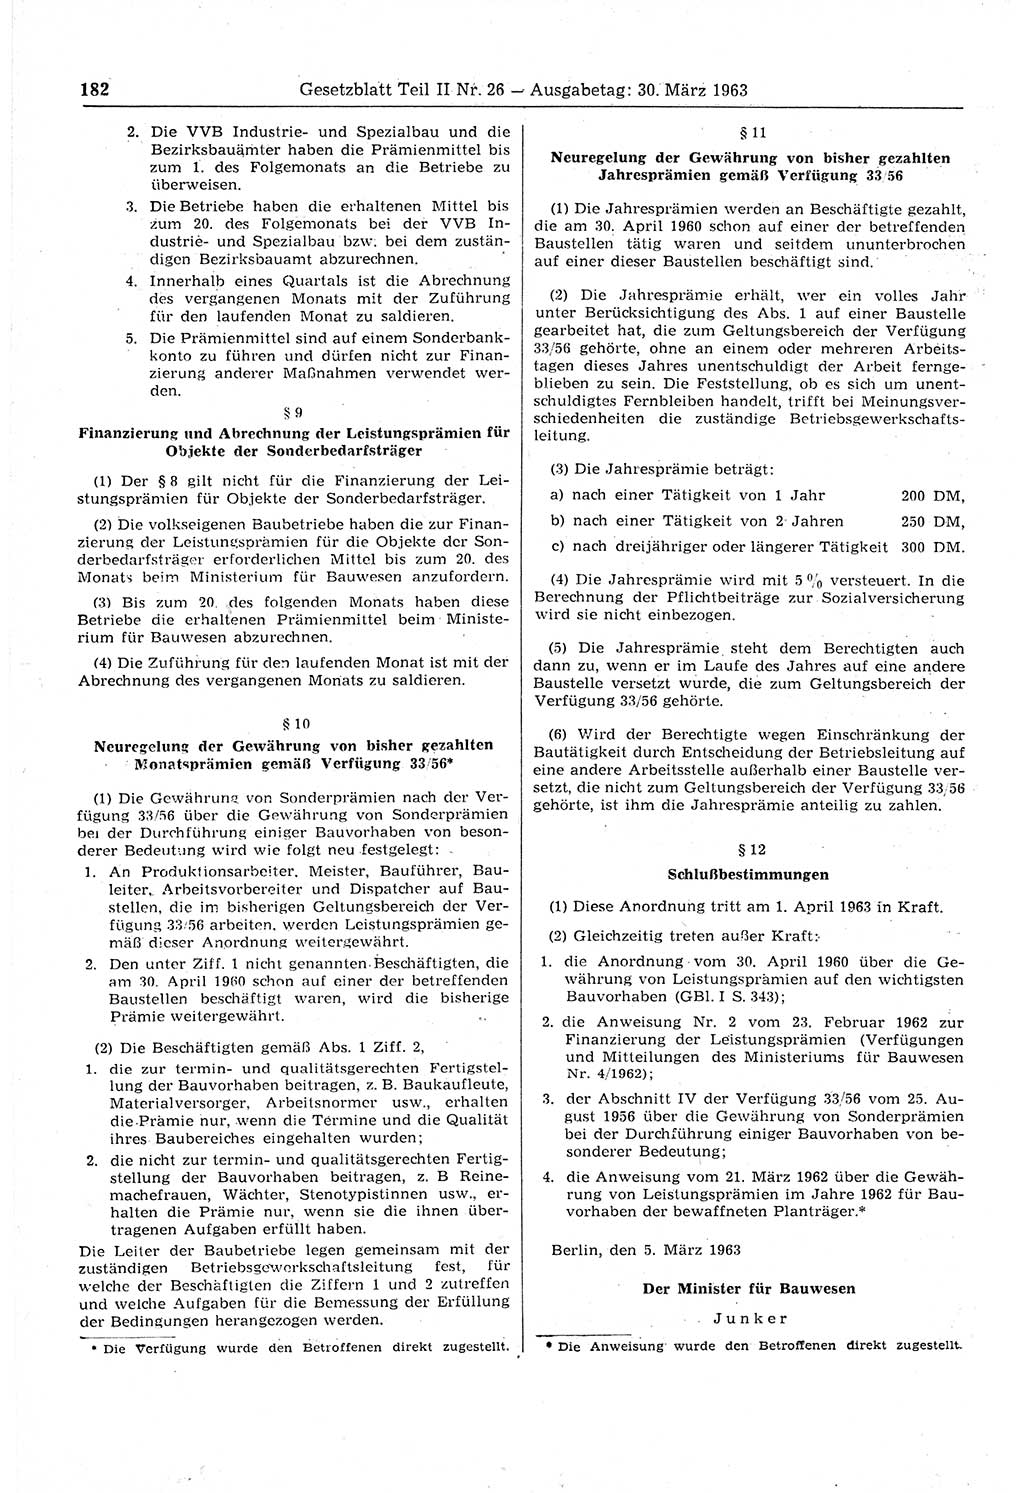 Gesetzblatt (GBl.) der Deutschen Demokratischen Republik (DDR) Teil ⅠⅠ 1963, Seite 182 (GBl. DDR ⅠⅠ 1963, S. 182)